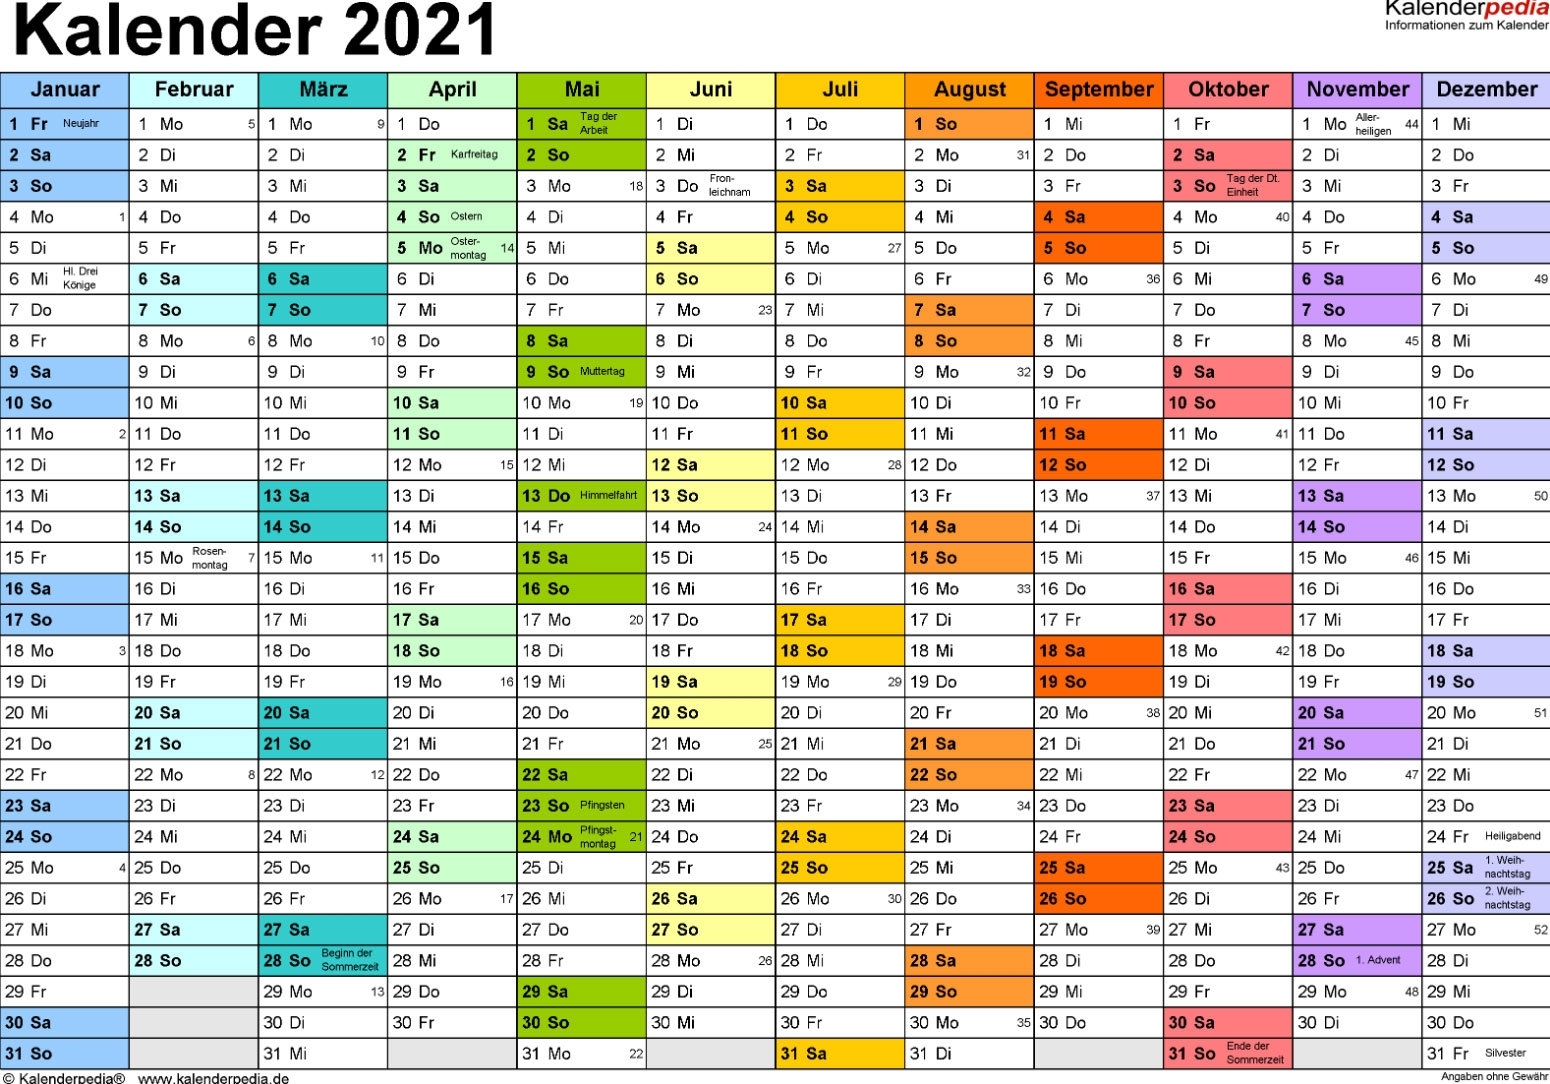 Take Kalender Deutsch 2021